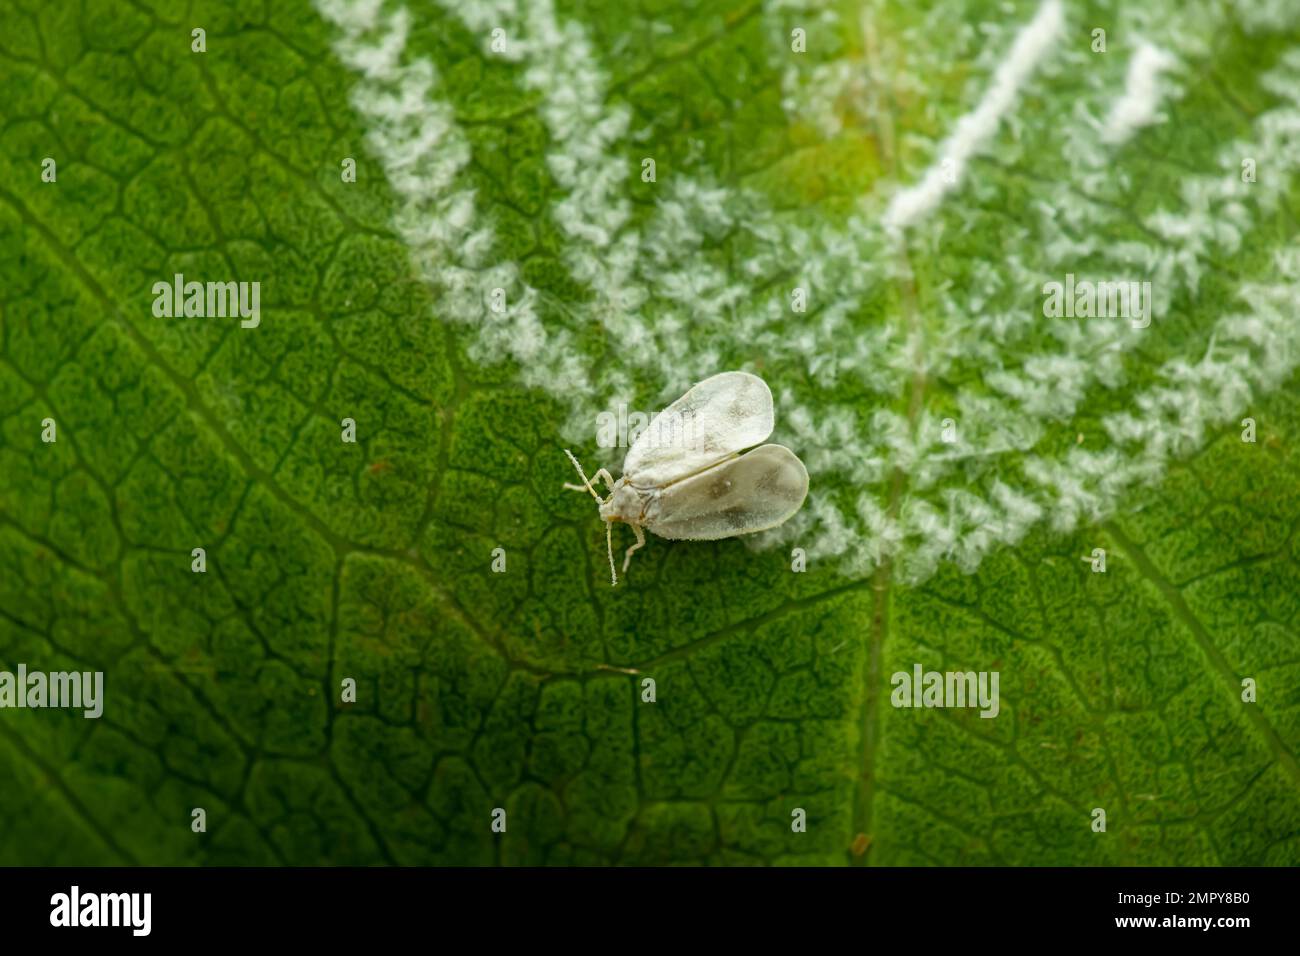 Weiße Fliege auf dem Blatt mit ihren haarigen wachsähnlichen Produkten unter dem Blatt. Es handelt sich um einen wichtigen und ernsten Schädling landwirtschaftlicher Kulturpflanzen. Stockfoto